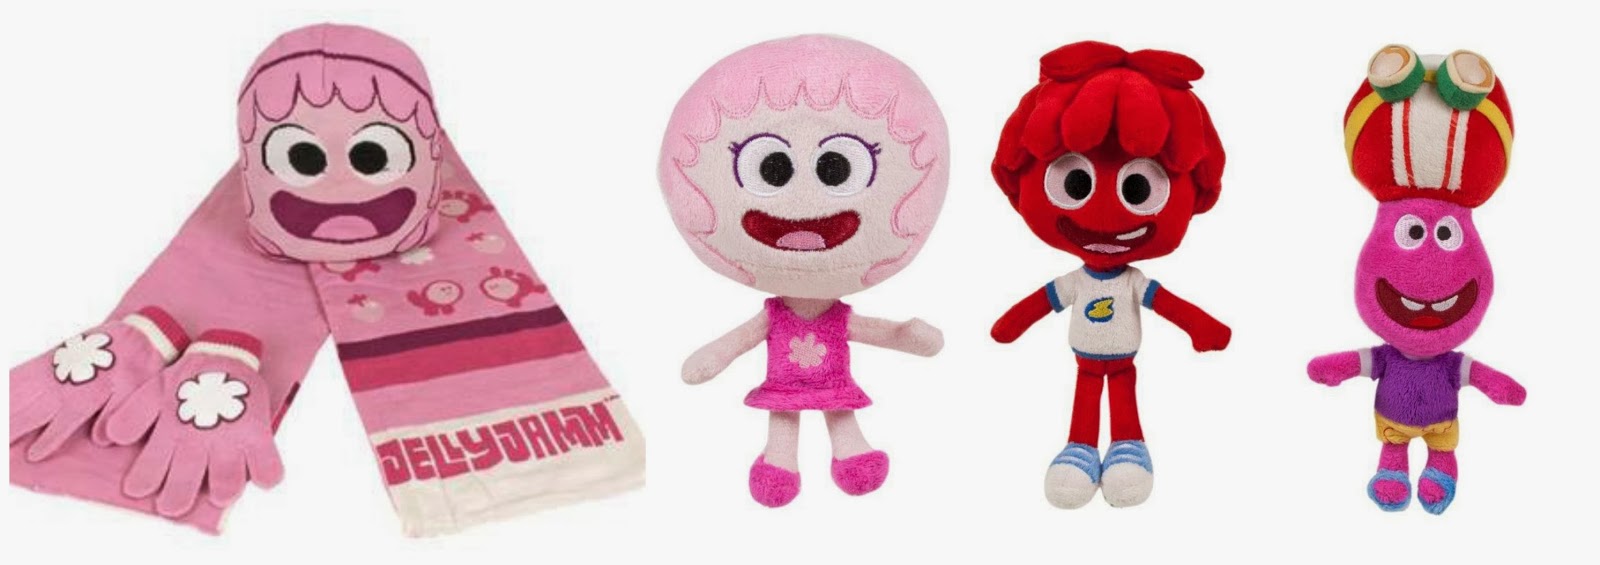 Jelly Jamm prizes - Rita Hat and Scarf Mini Rita Bello Gooomo Plush toys